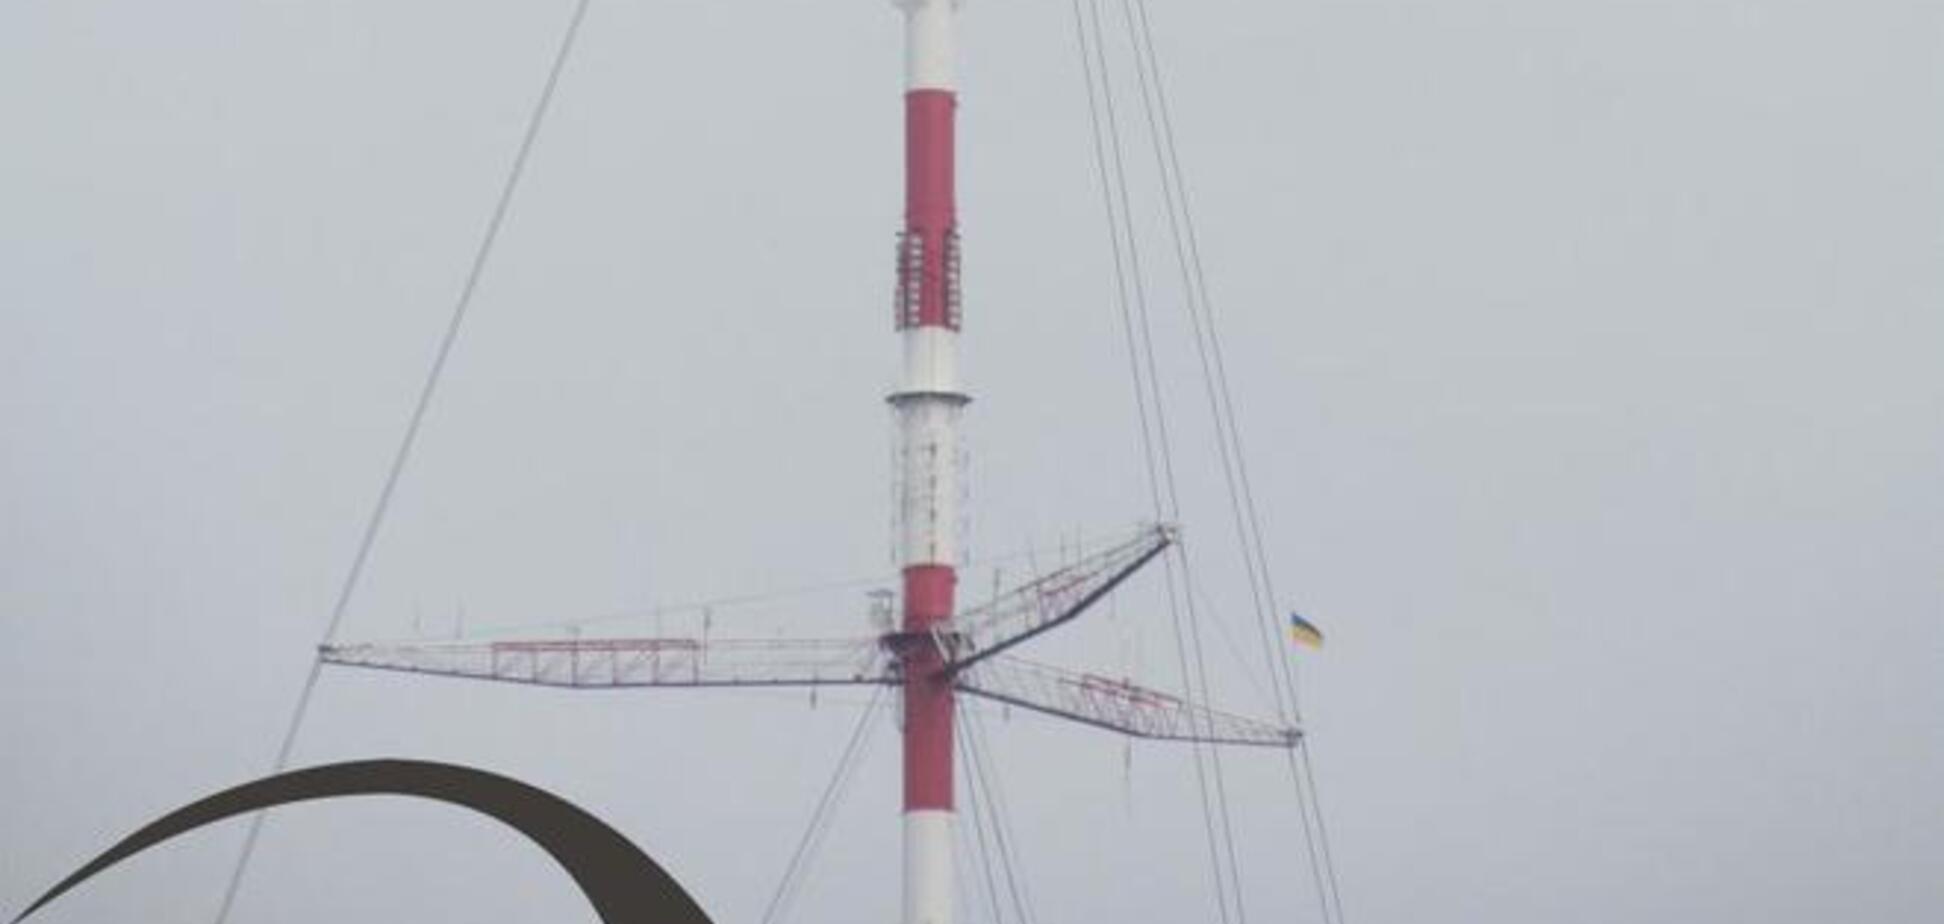 На 354-метровой винницкой телебашне появился украинский флаг